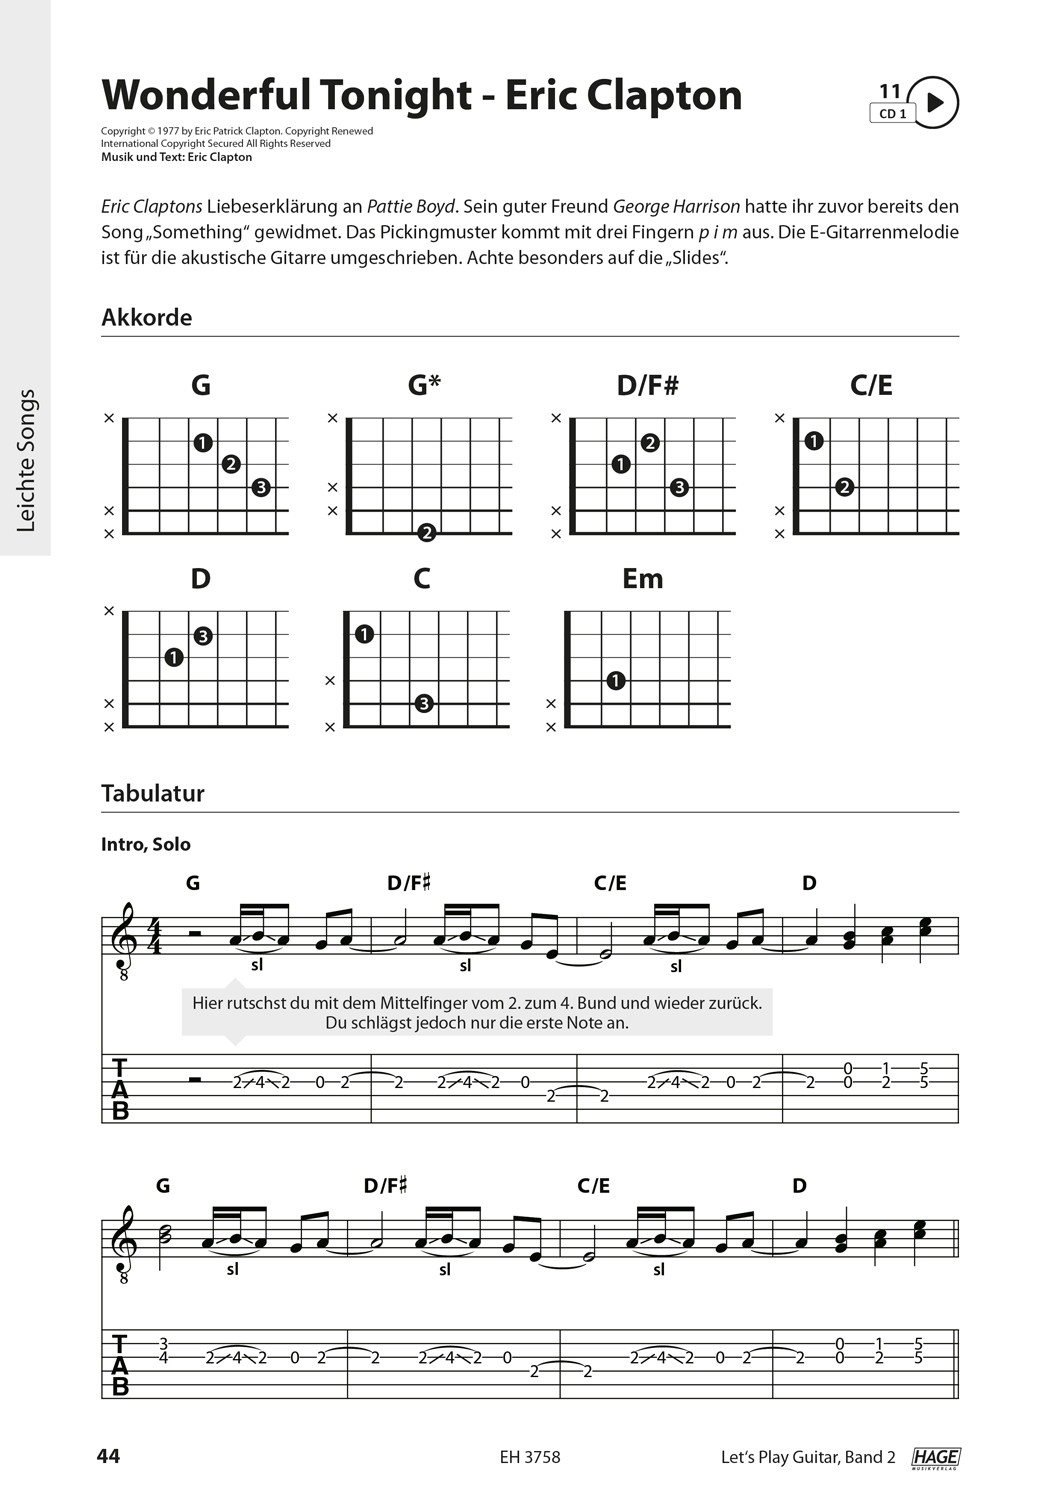 Let's Play Guitar Band 2 (mit 2 CDs und QR-Codes) Seiten 7